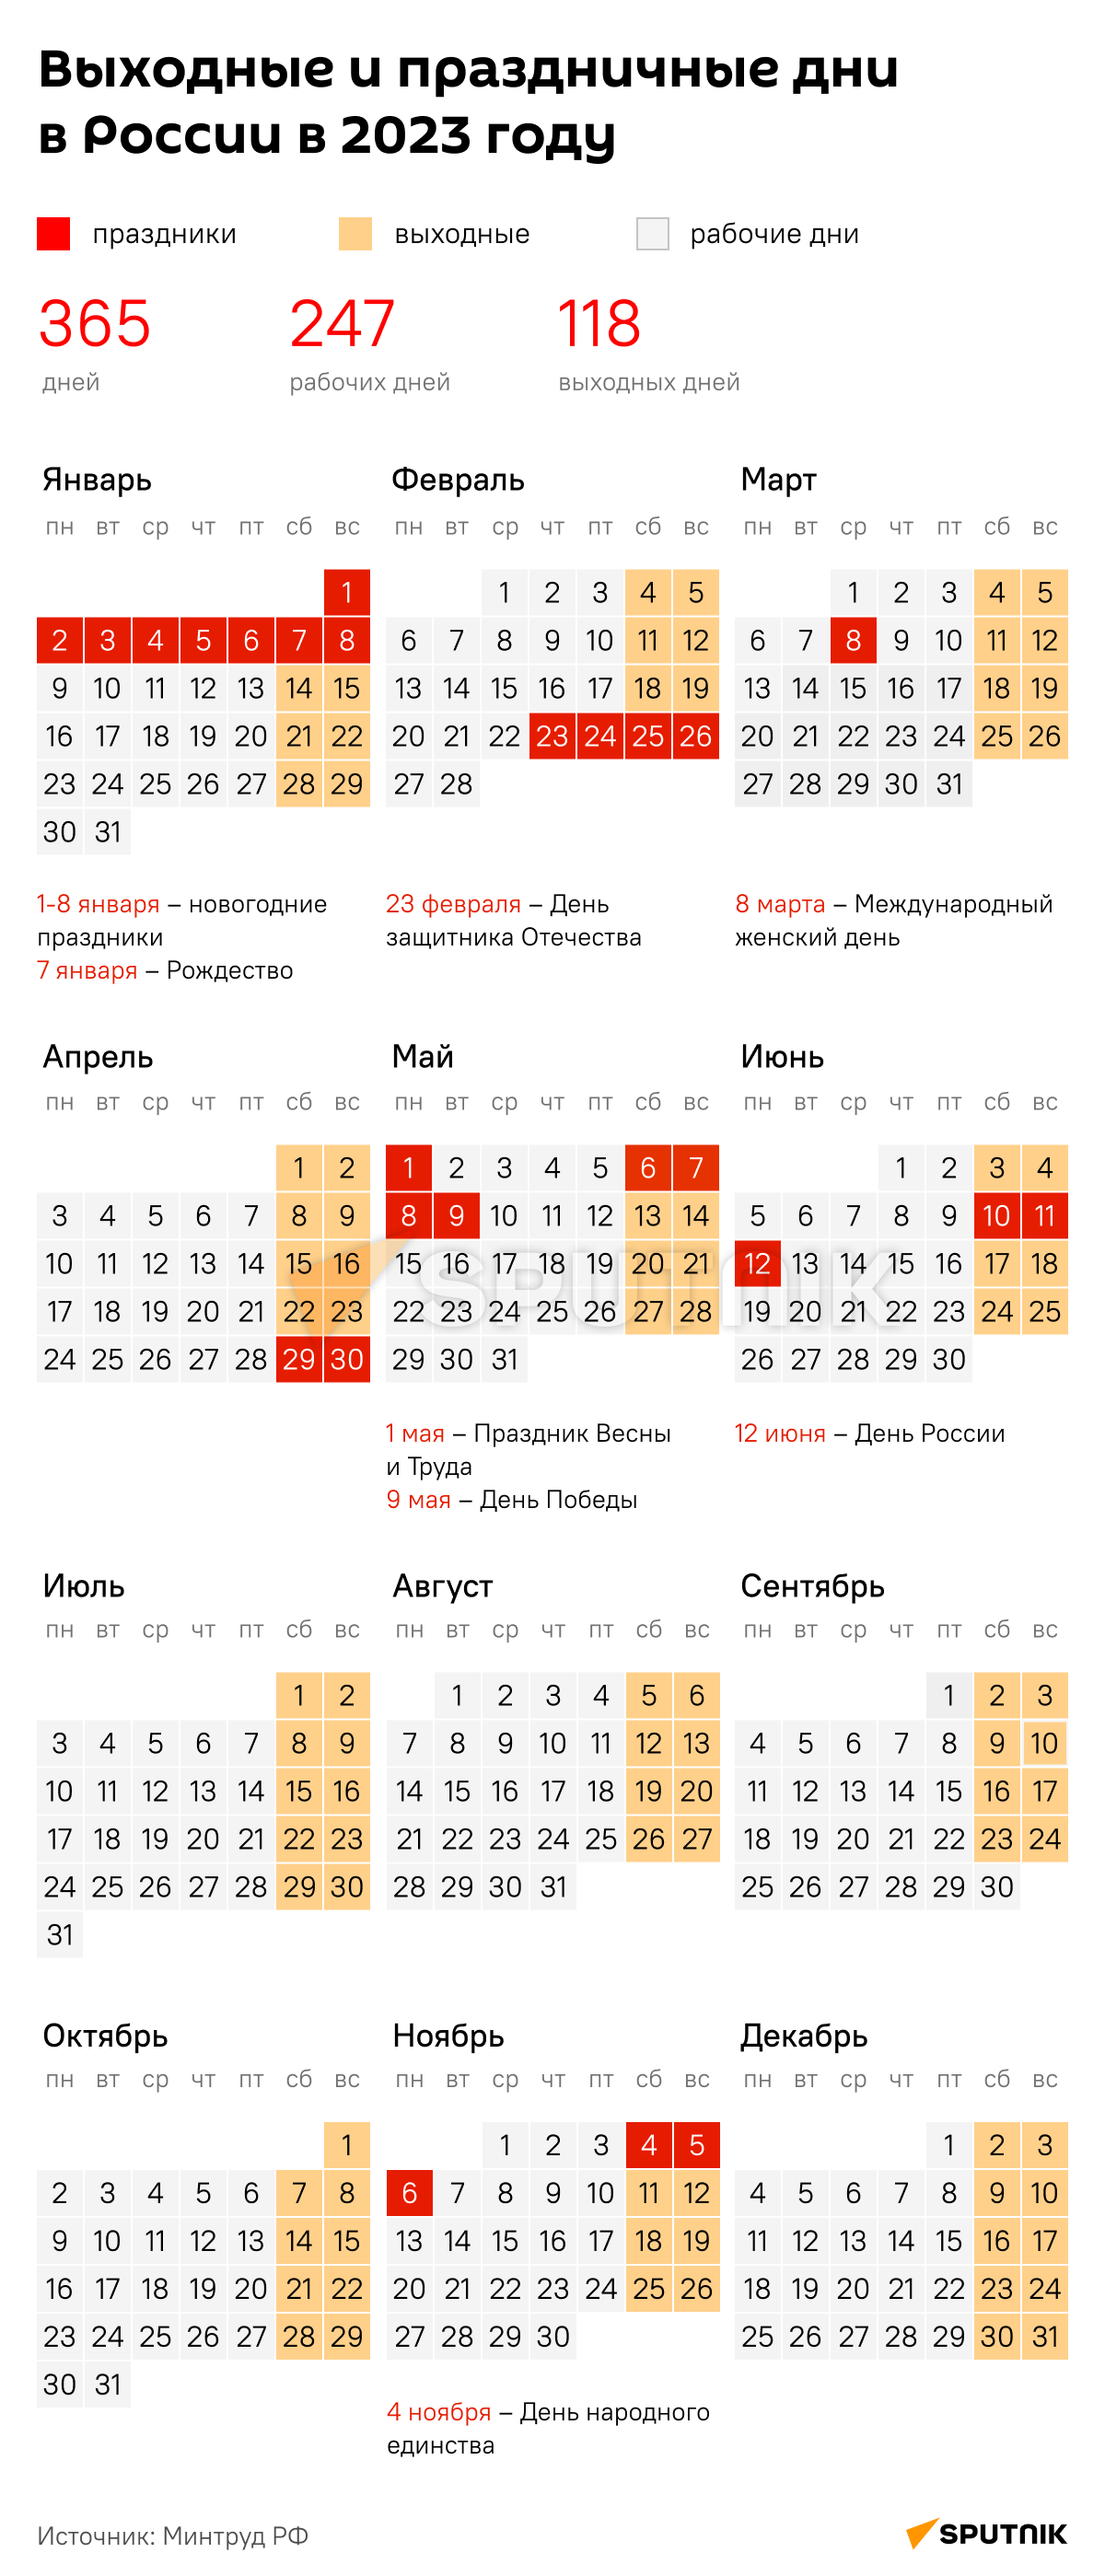 Производственный календарь 2023 год: праздники в России